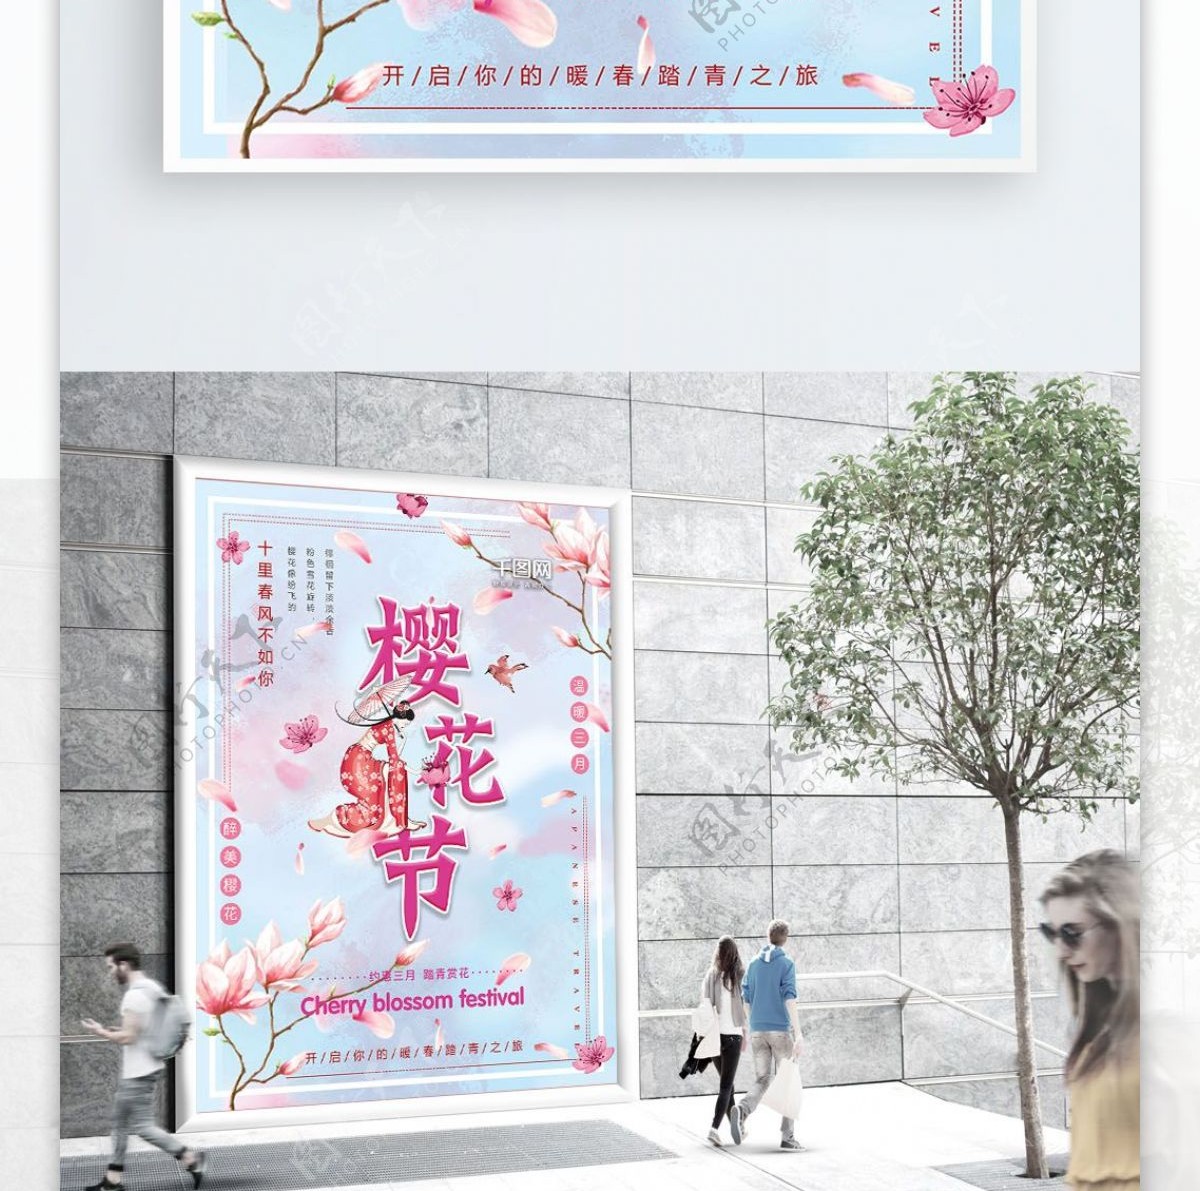 唯美浪漫小清新樱花节节日海报设计